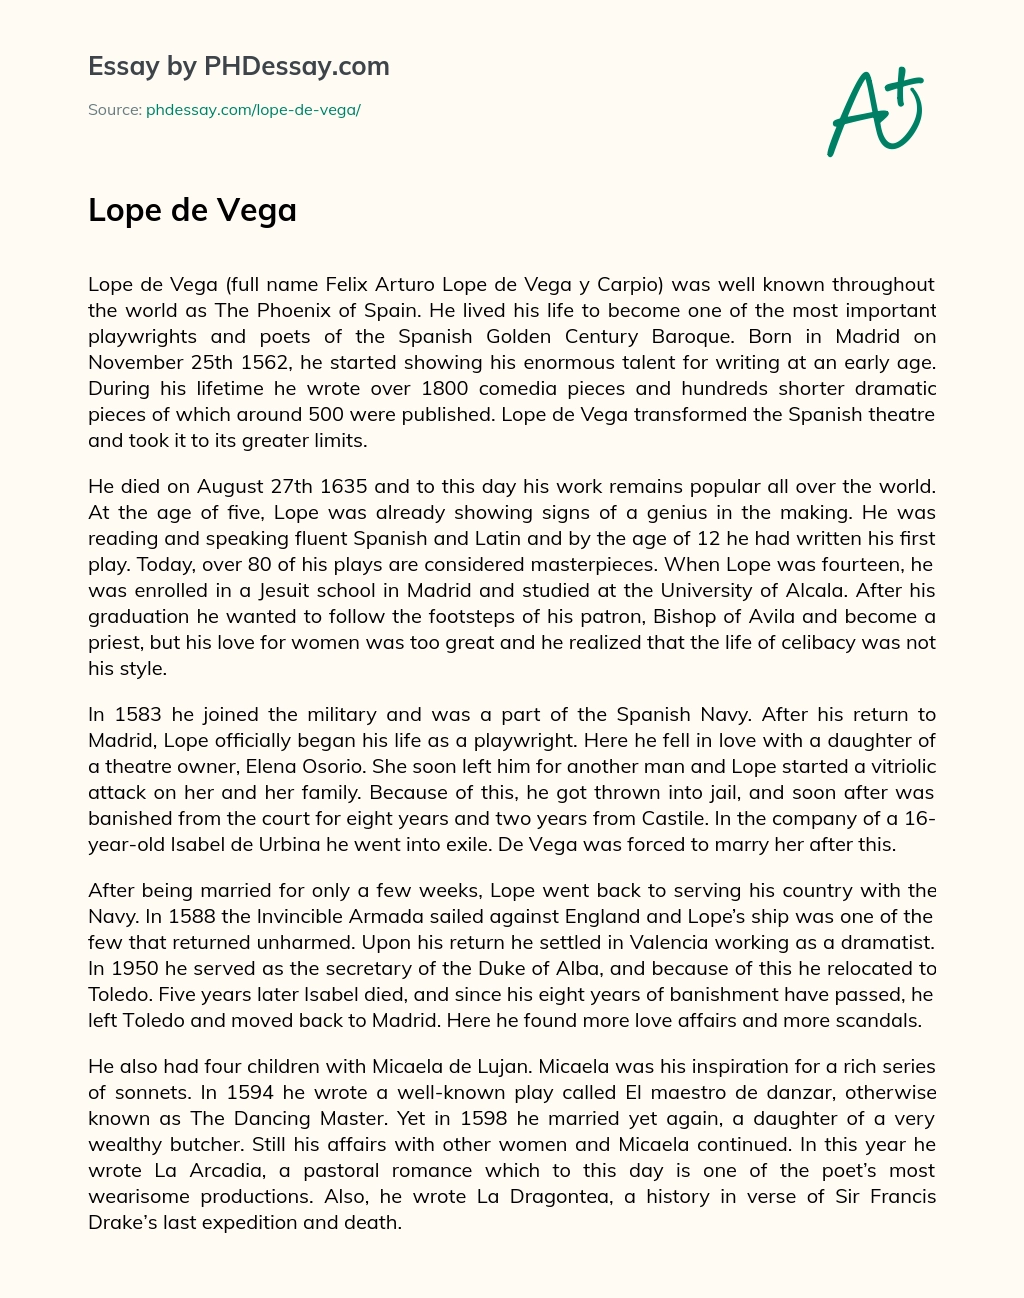 Lope de Vega essay